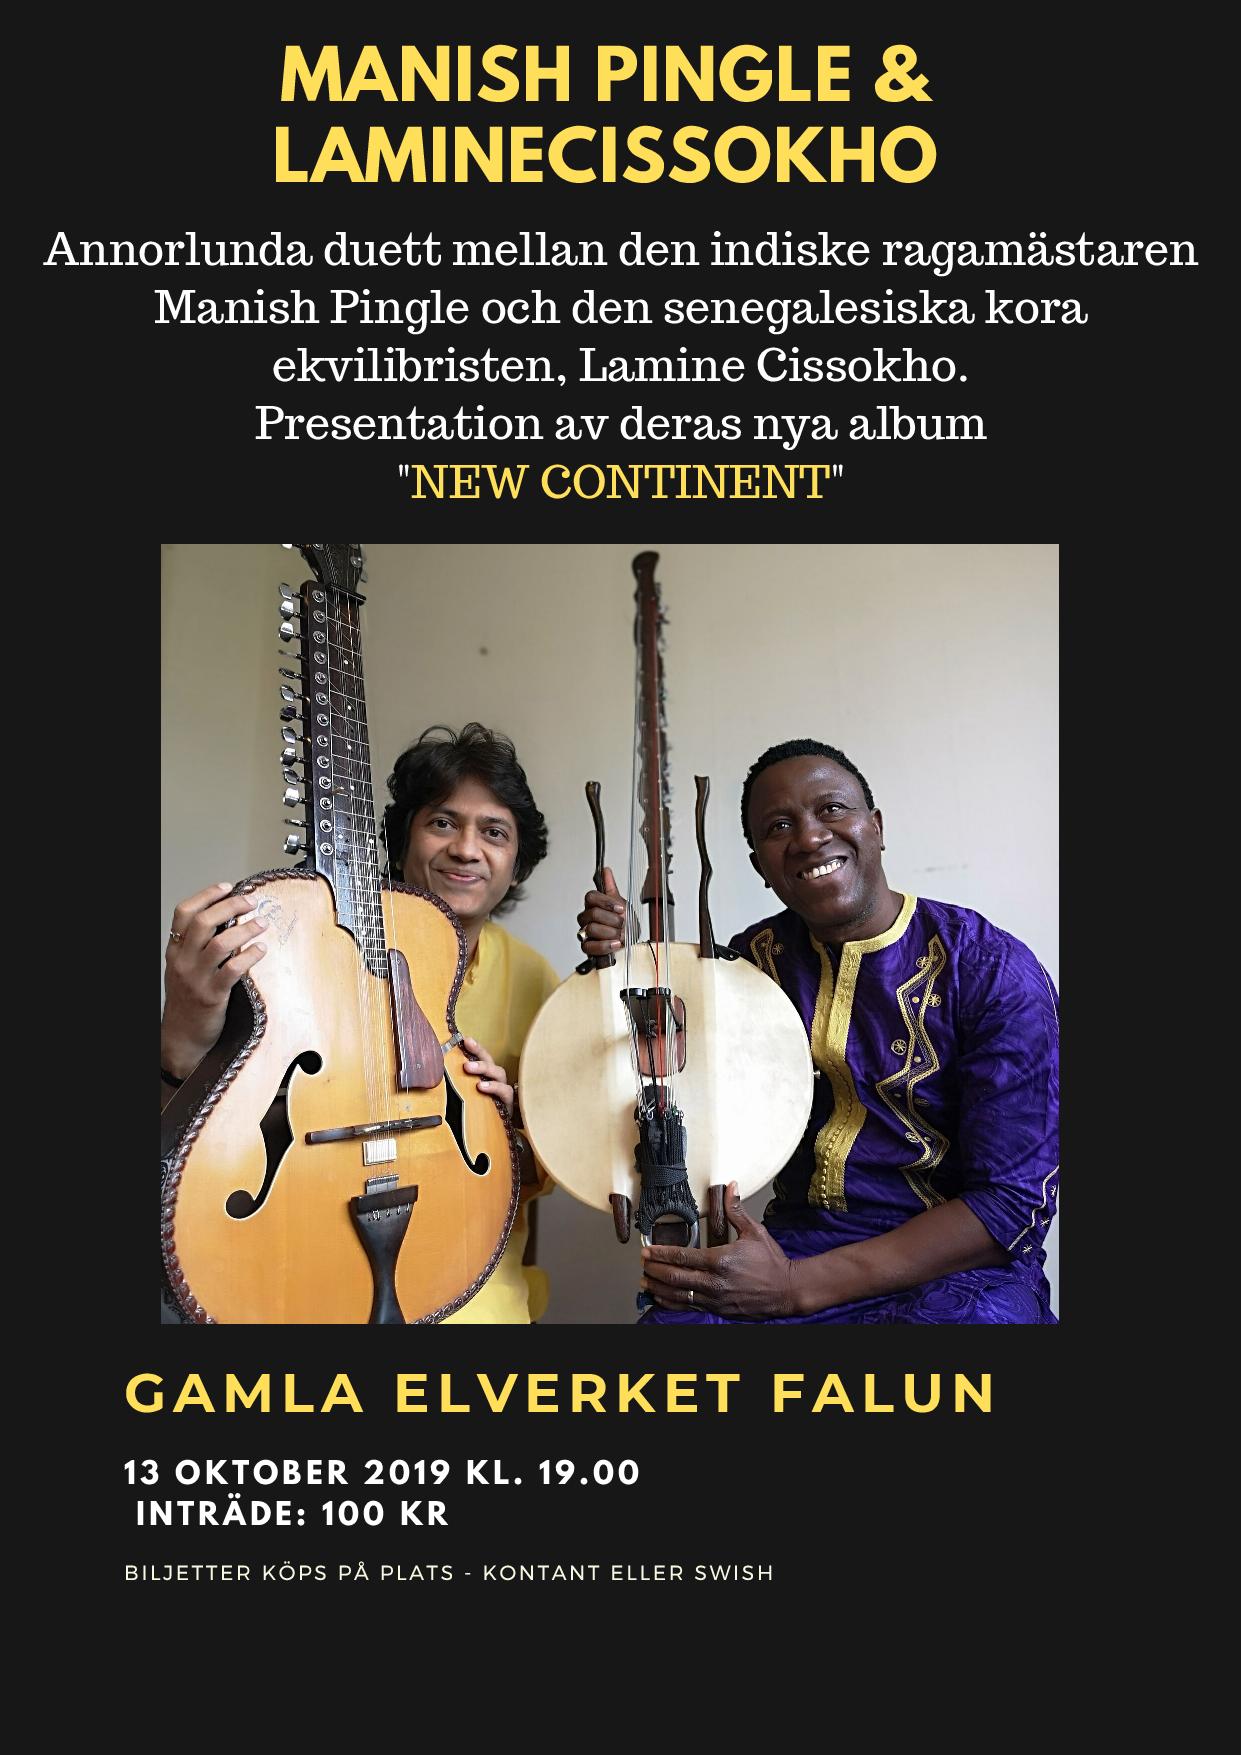 Manish Pingle (indisk slide gitarr) och Lamine Cissokho (västafrikanks kora) på Gamla Elverket